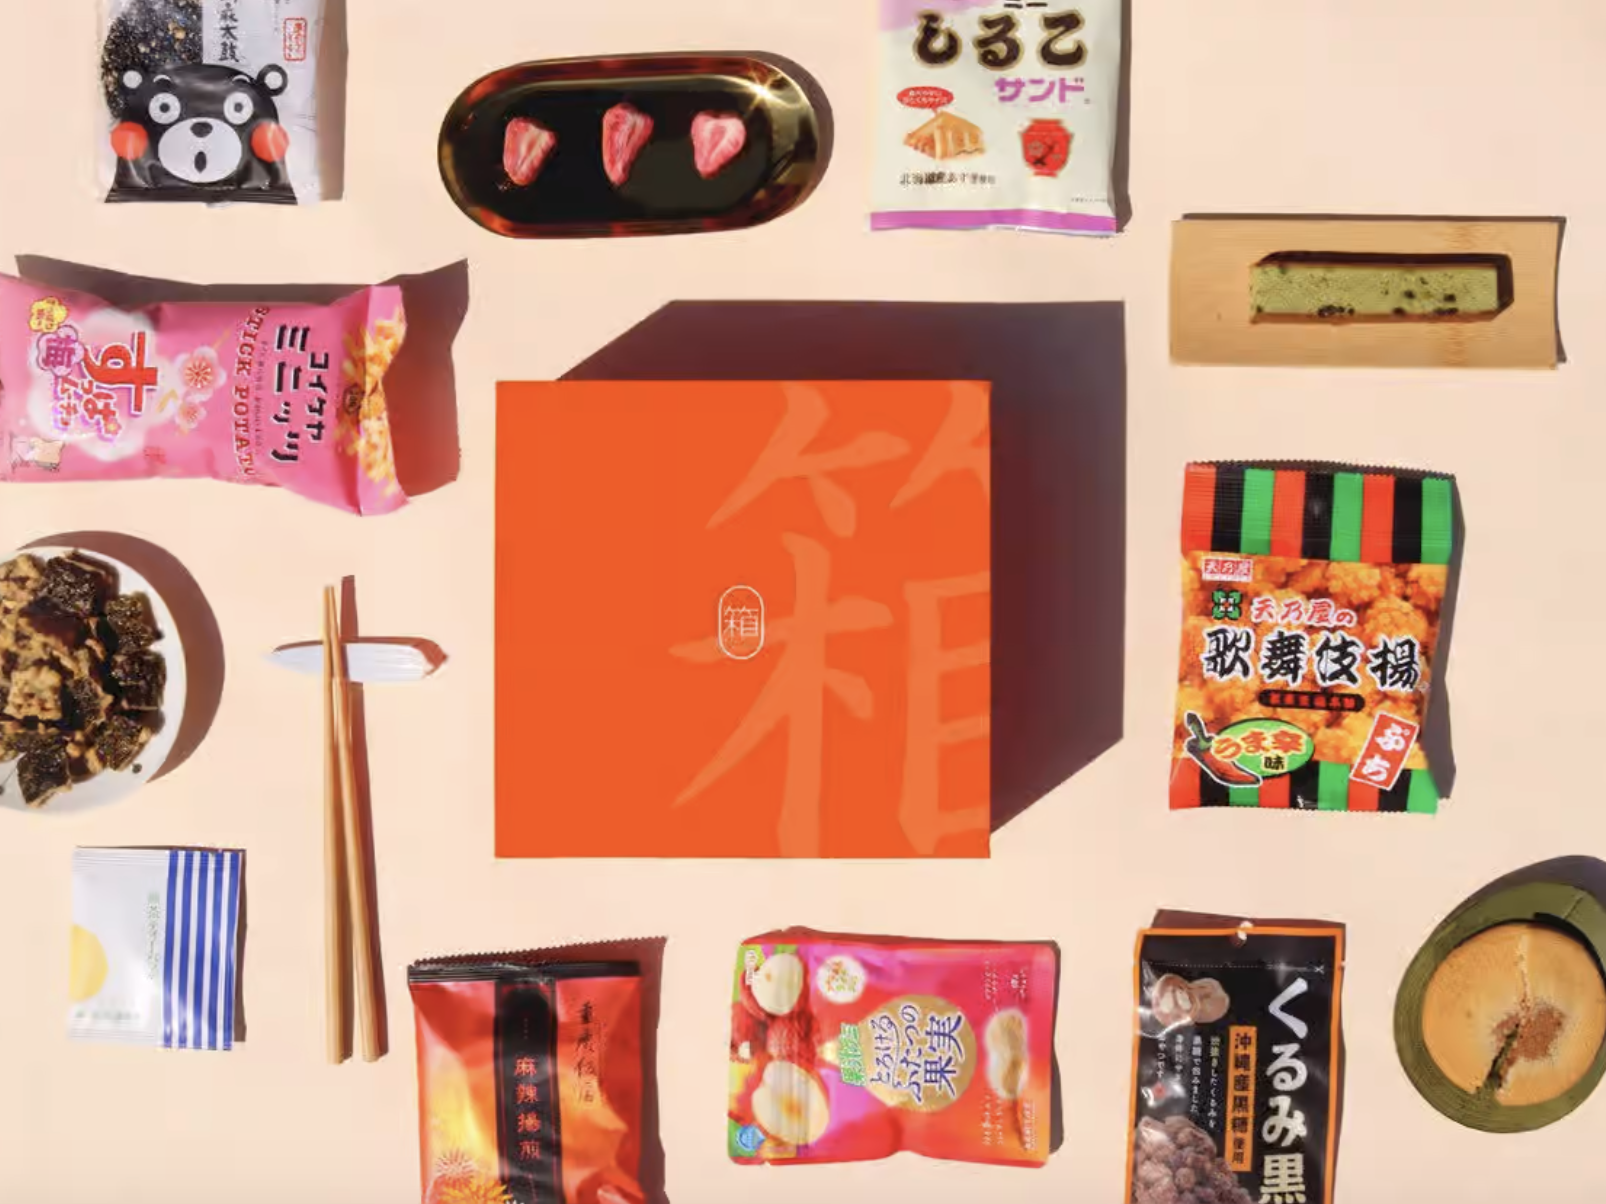 Japanese snacks, orange box, chopsticks